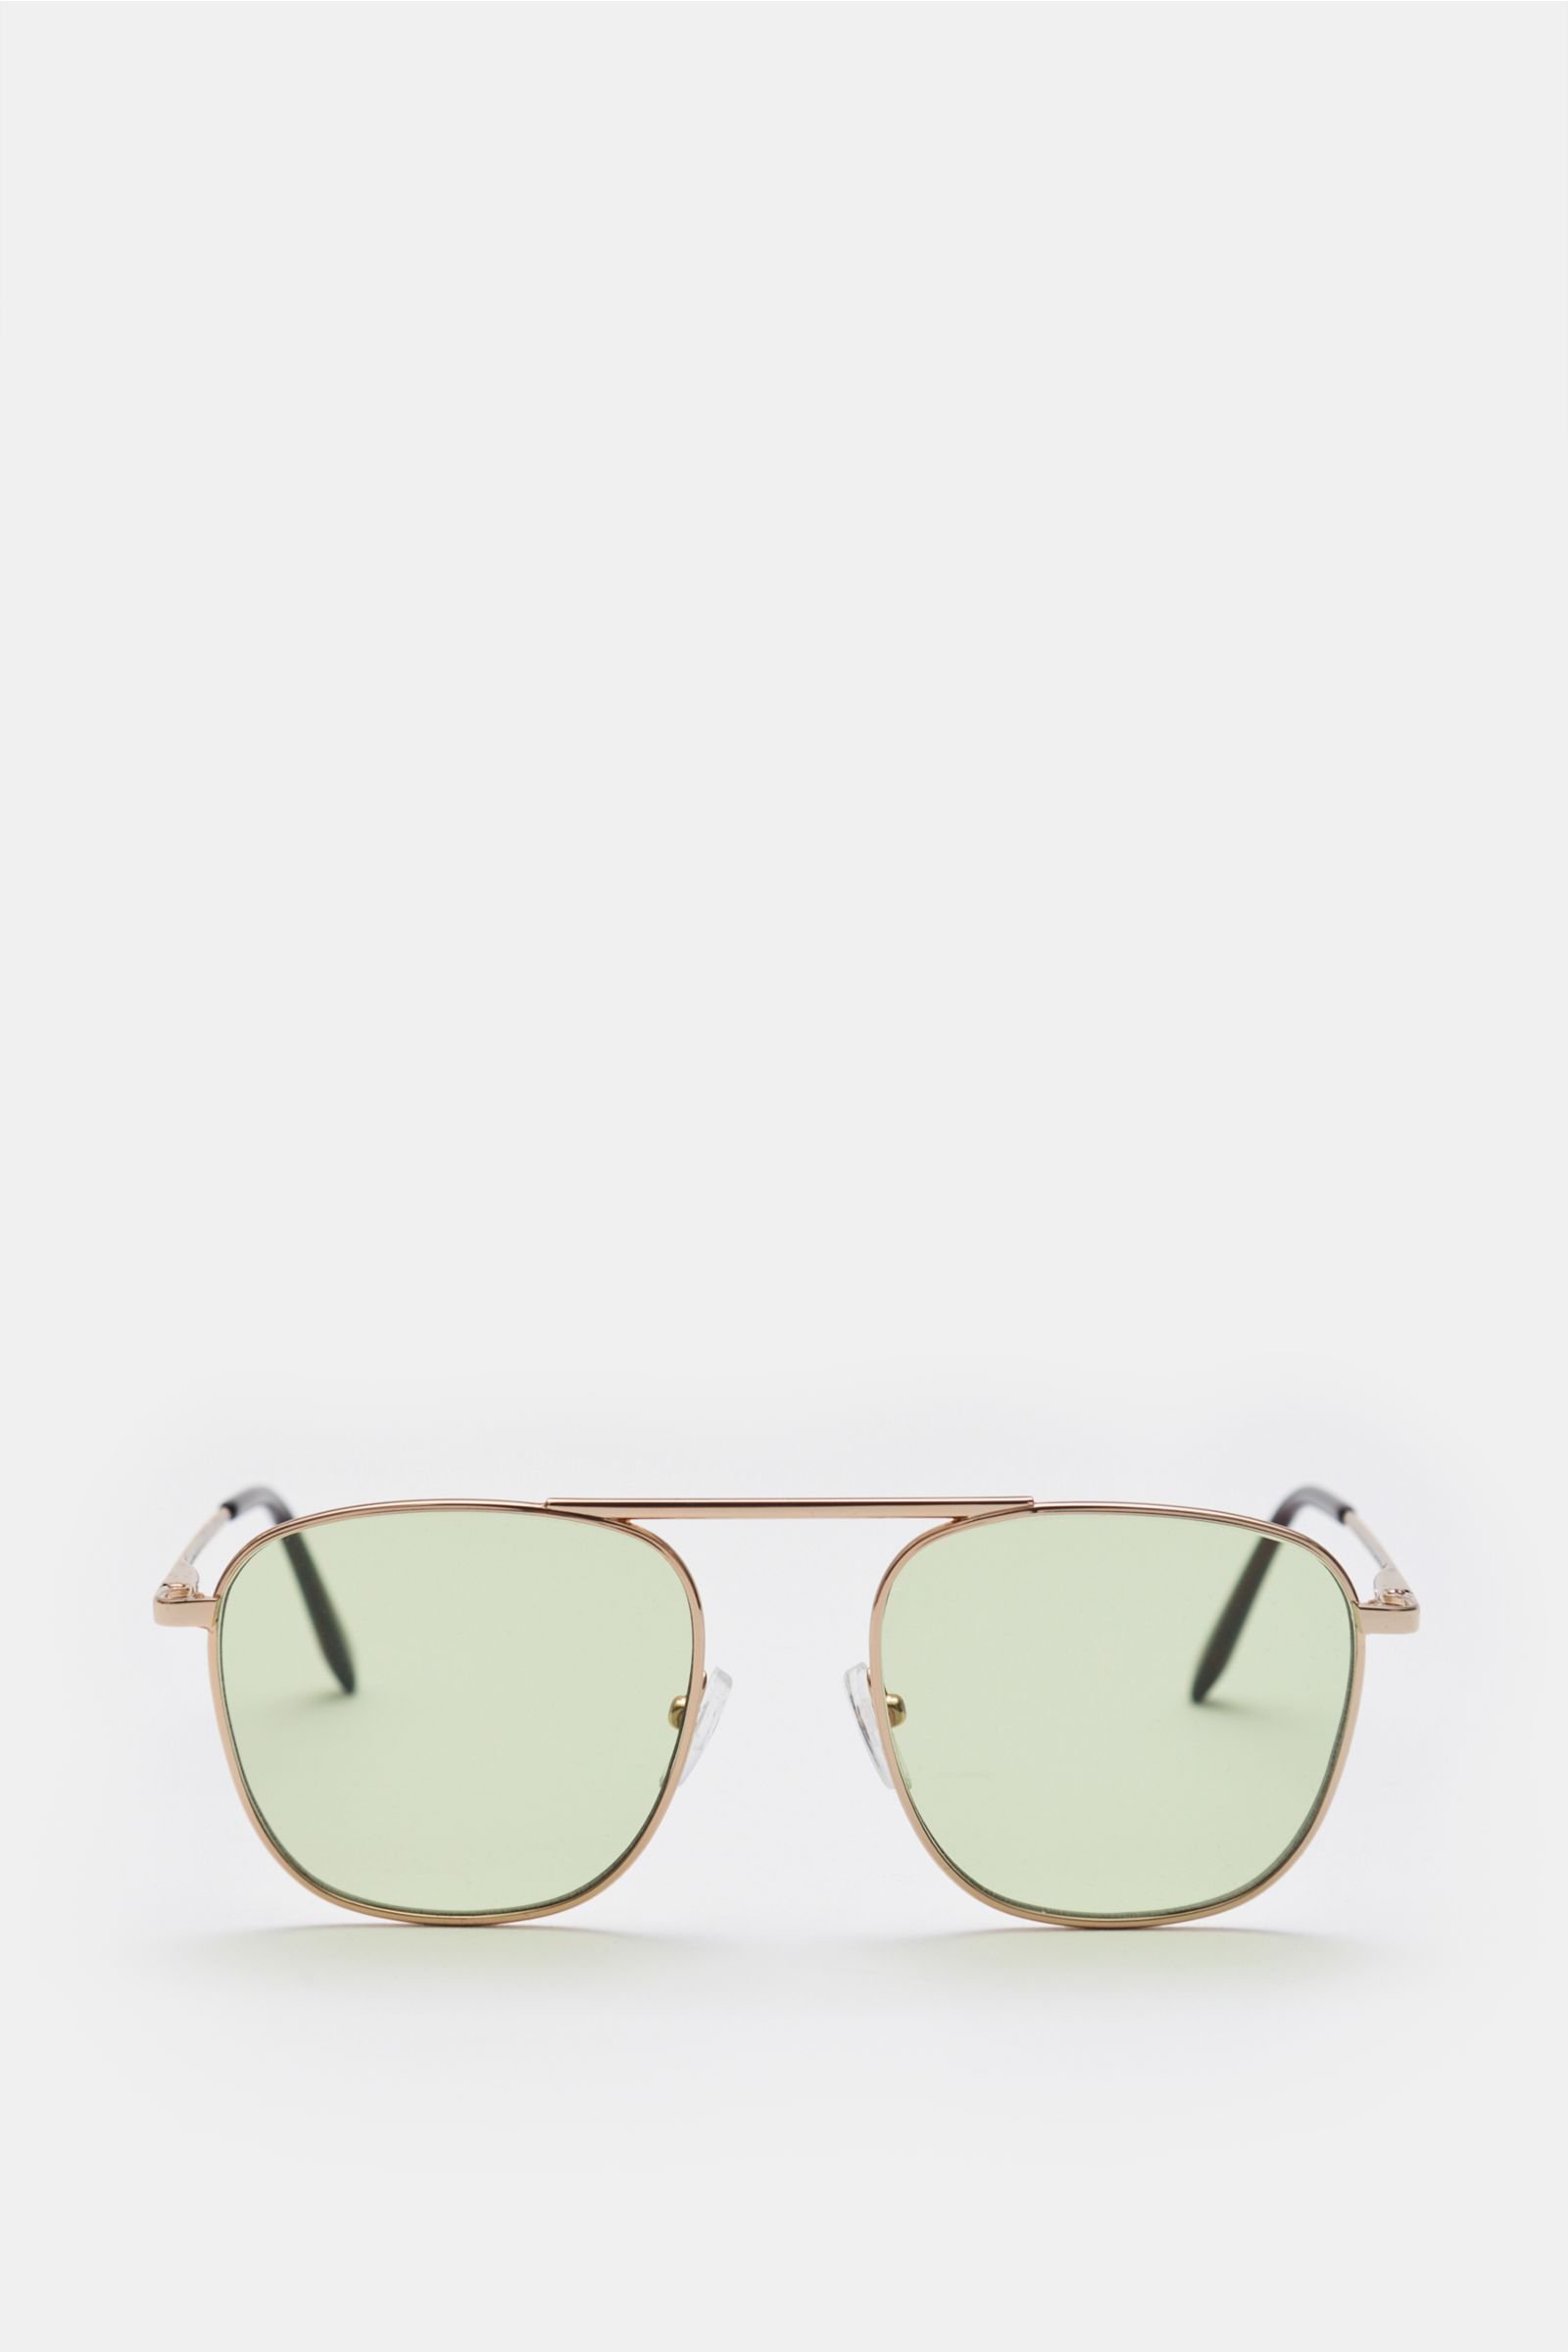 Sunglasses silver/green